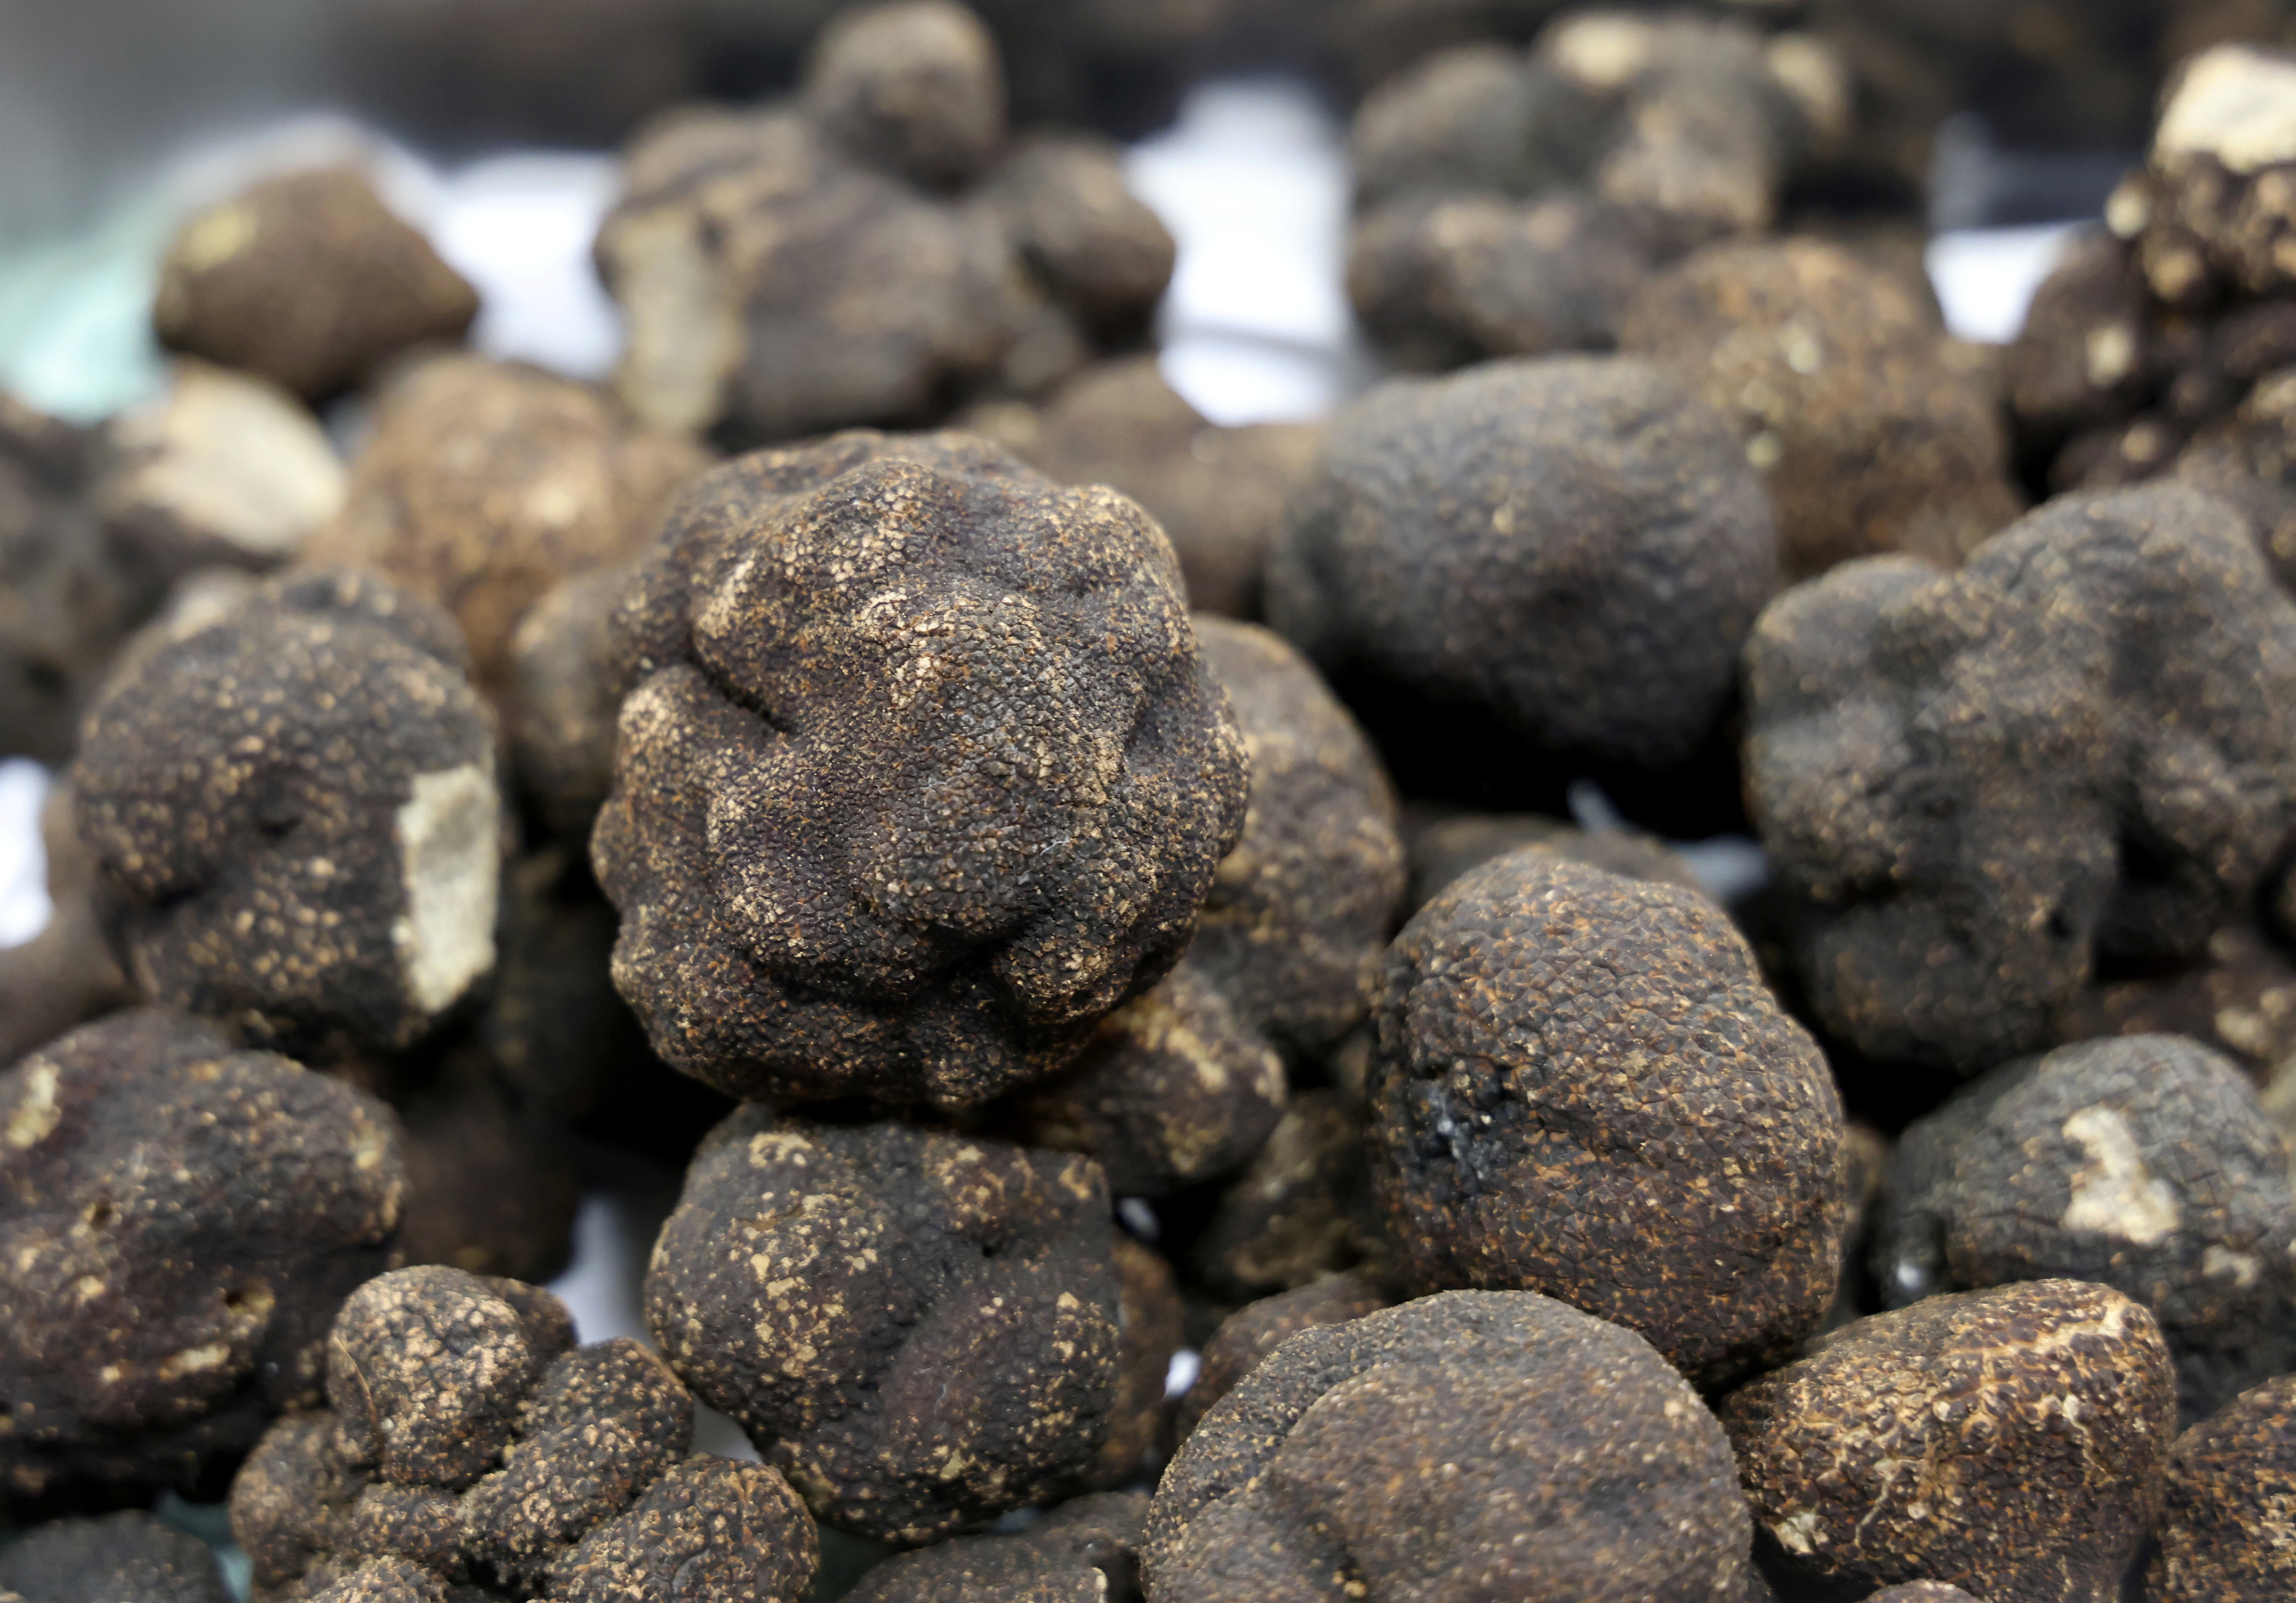 La truffe Noire du Périgord: La Tuber Melanosporum - Truffe Aléna